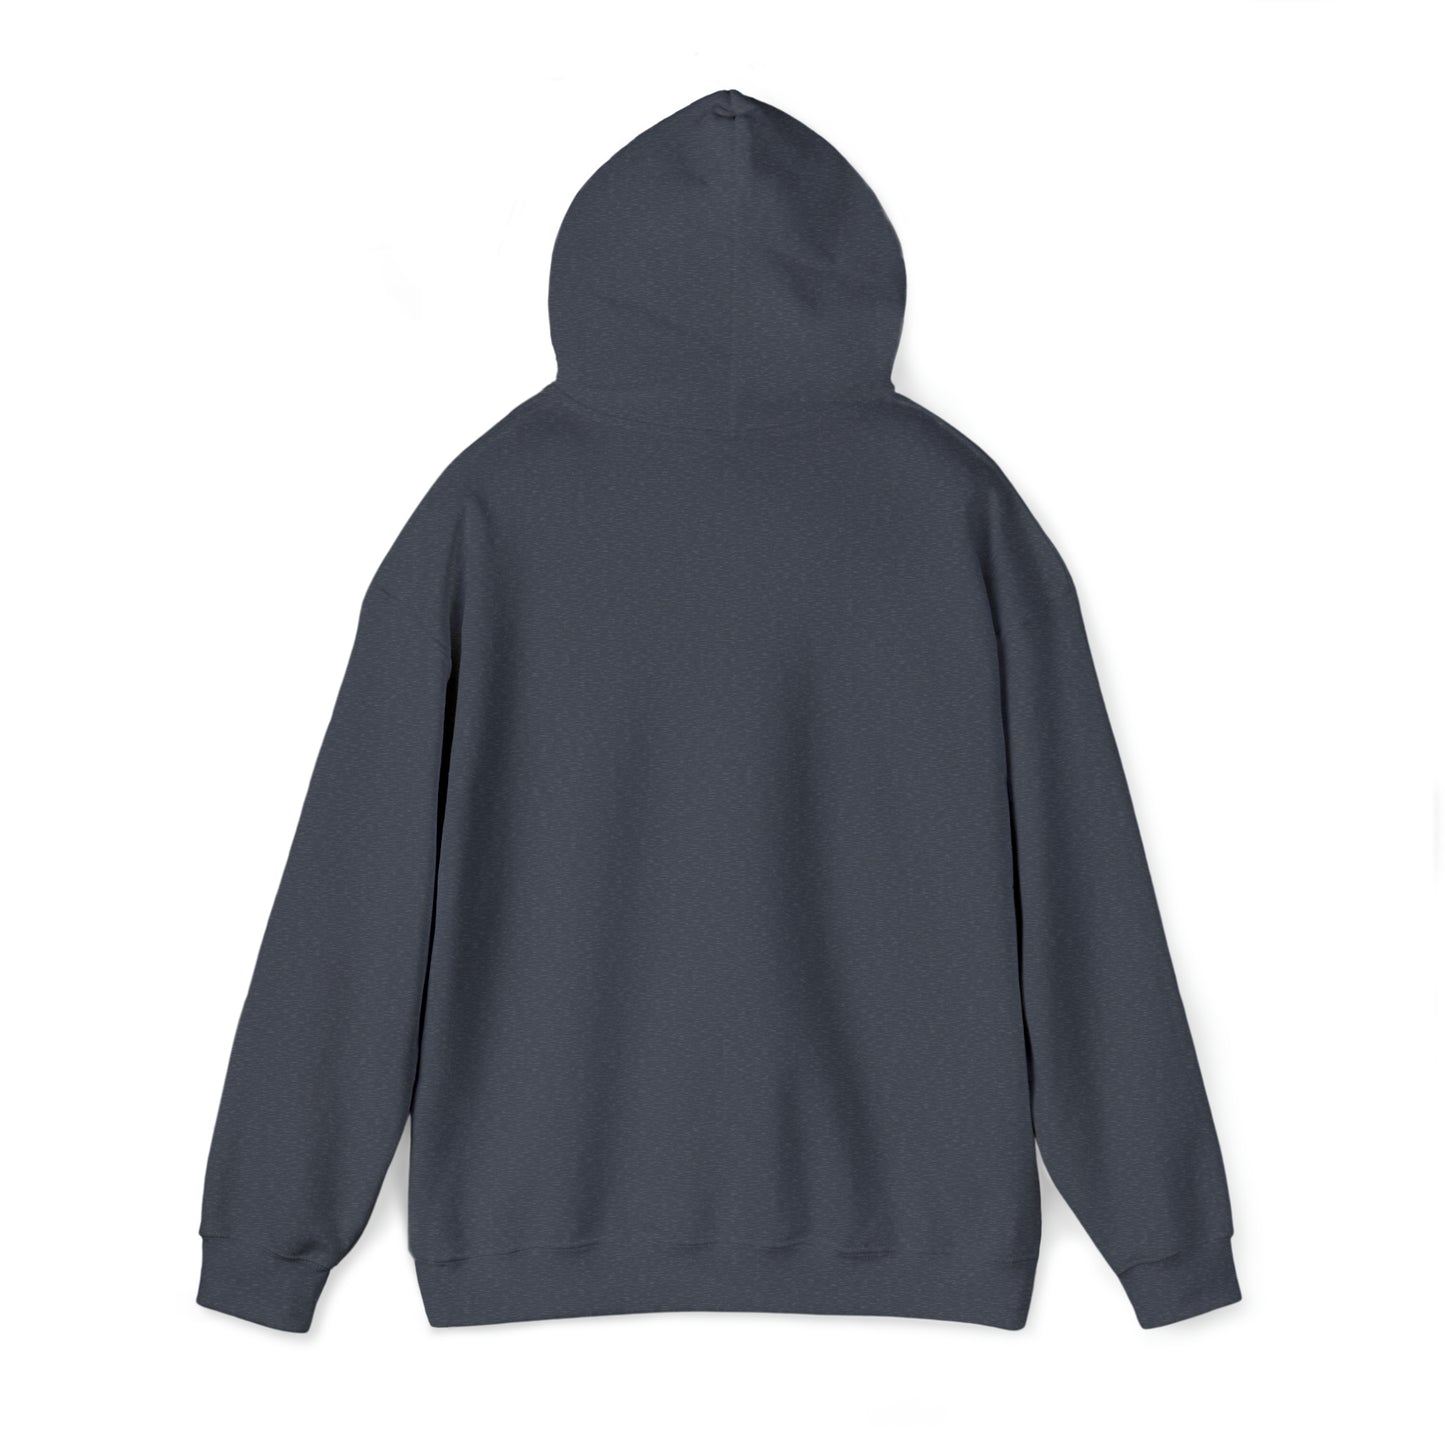 2 LOVED BY A KOOIKER Unisex Heavy Blend™ Hooded Sweatshirt